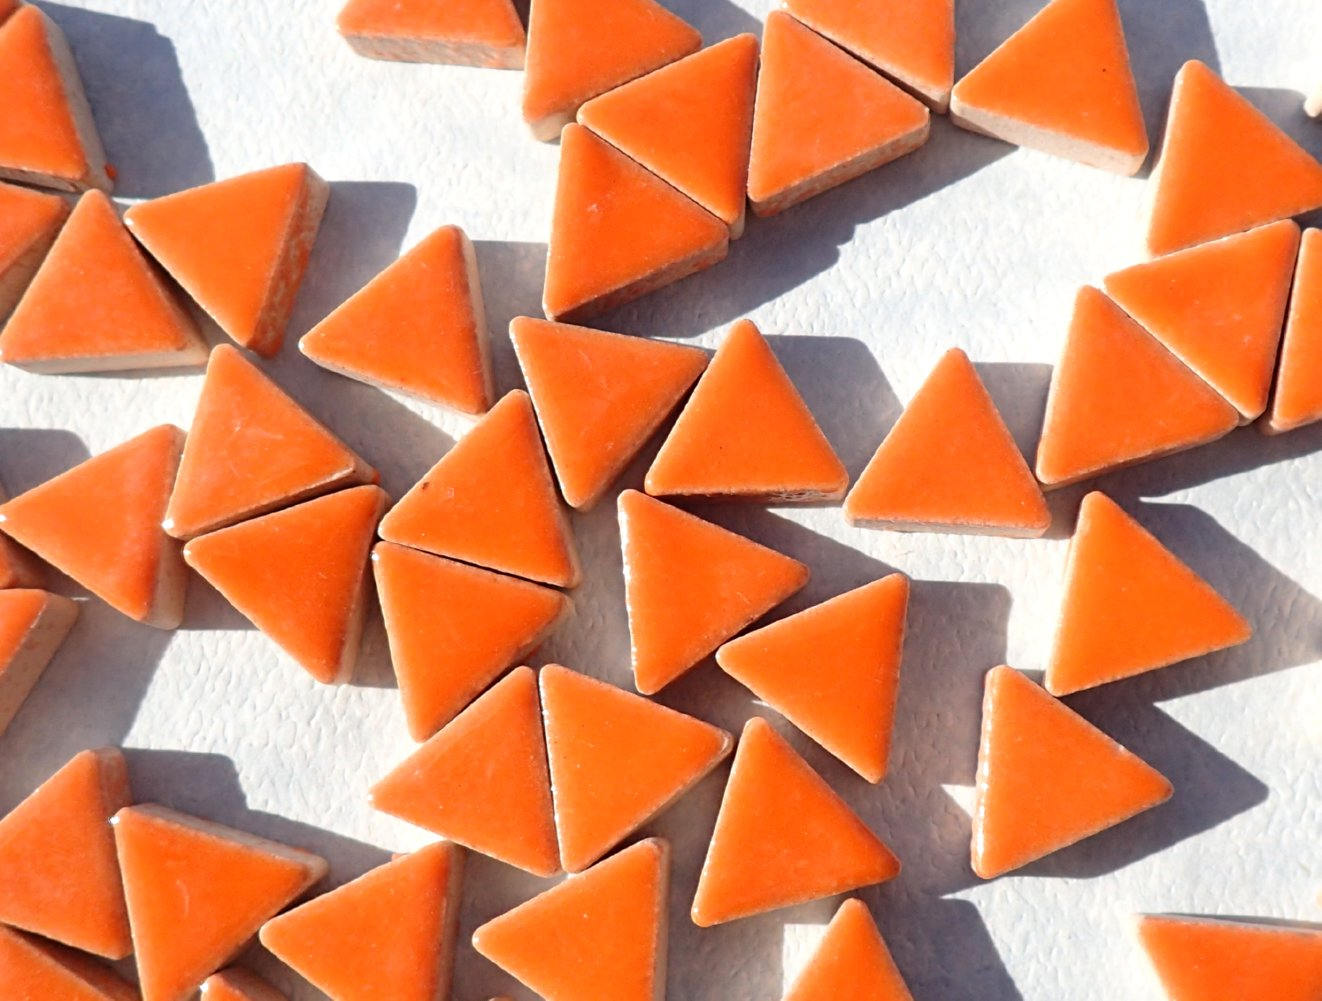 Orange Triangles Mosaic Tiles - 50g Ceramic - 15mm